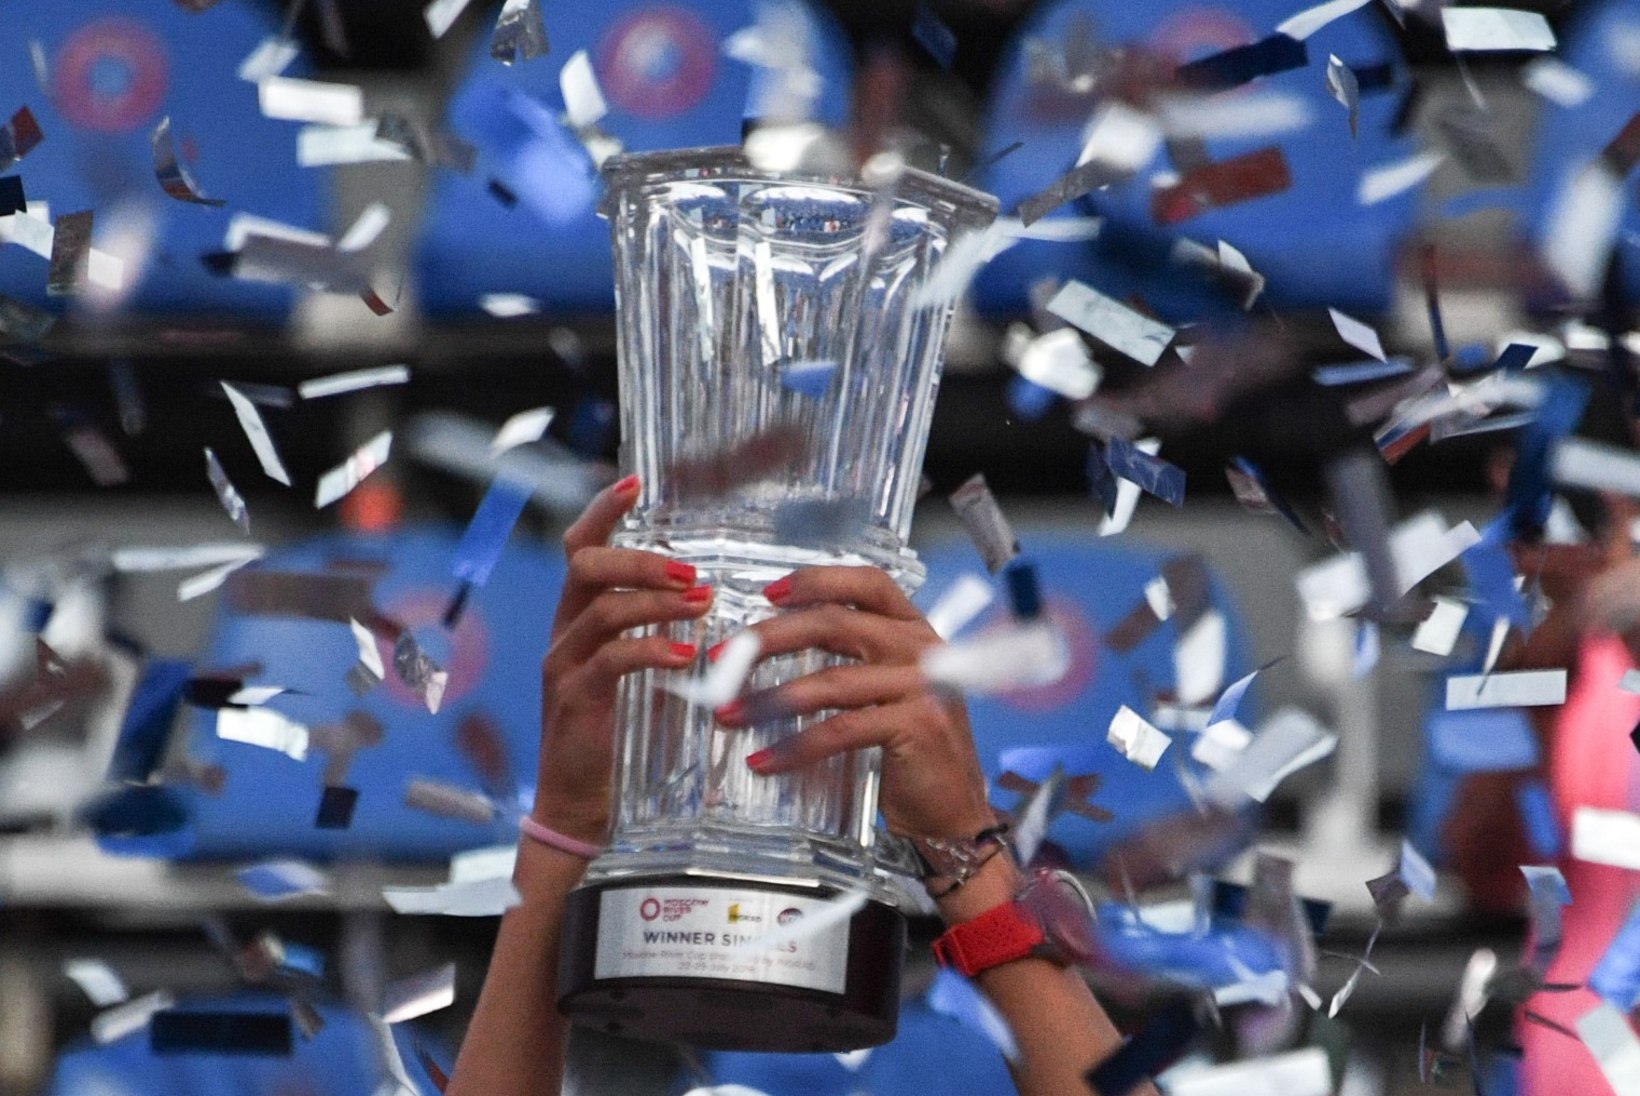 Kanepi alistanud serblanna sai esimeseks pärast 2000. aastat sündinud tennisistiks, kes võitnud WTA turniiri